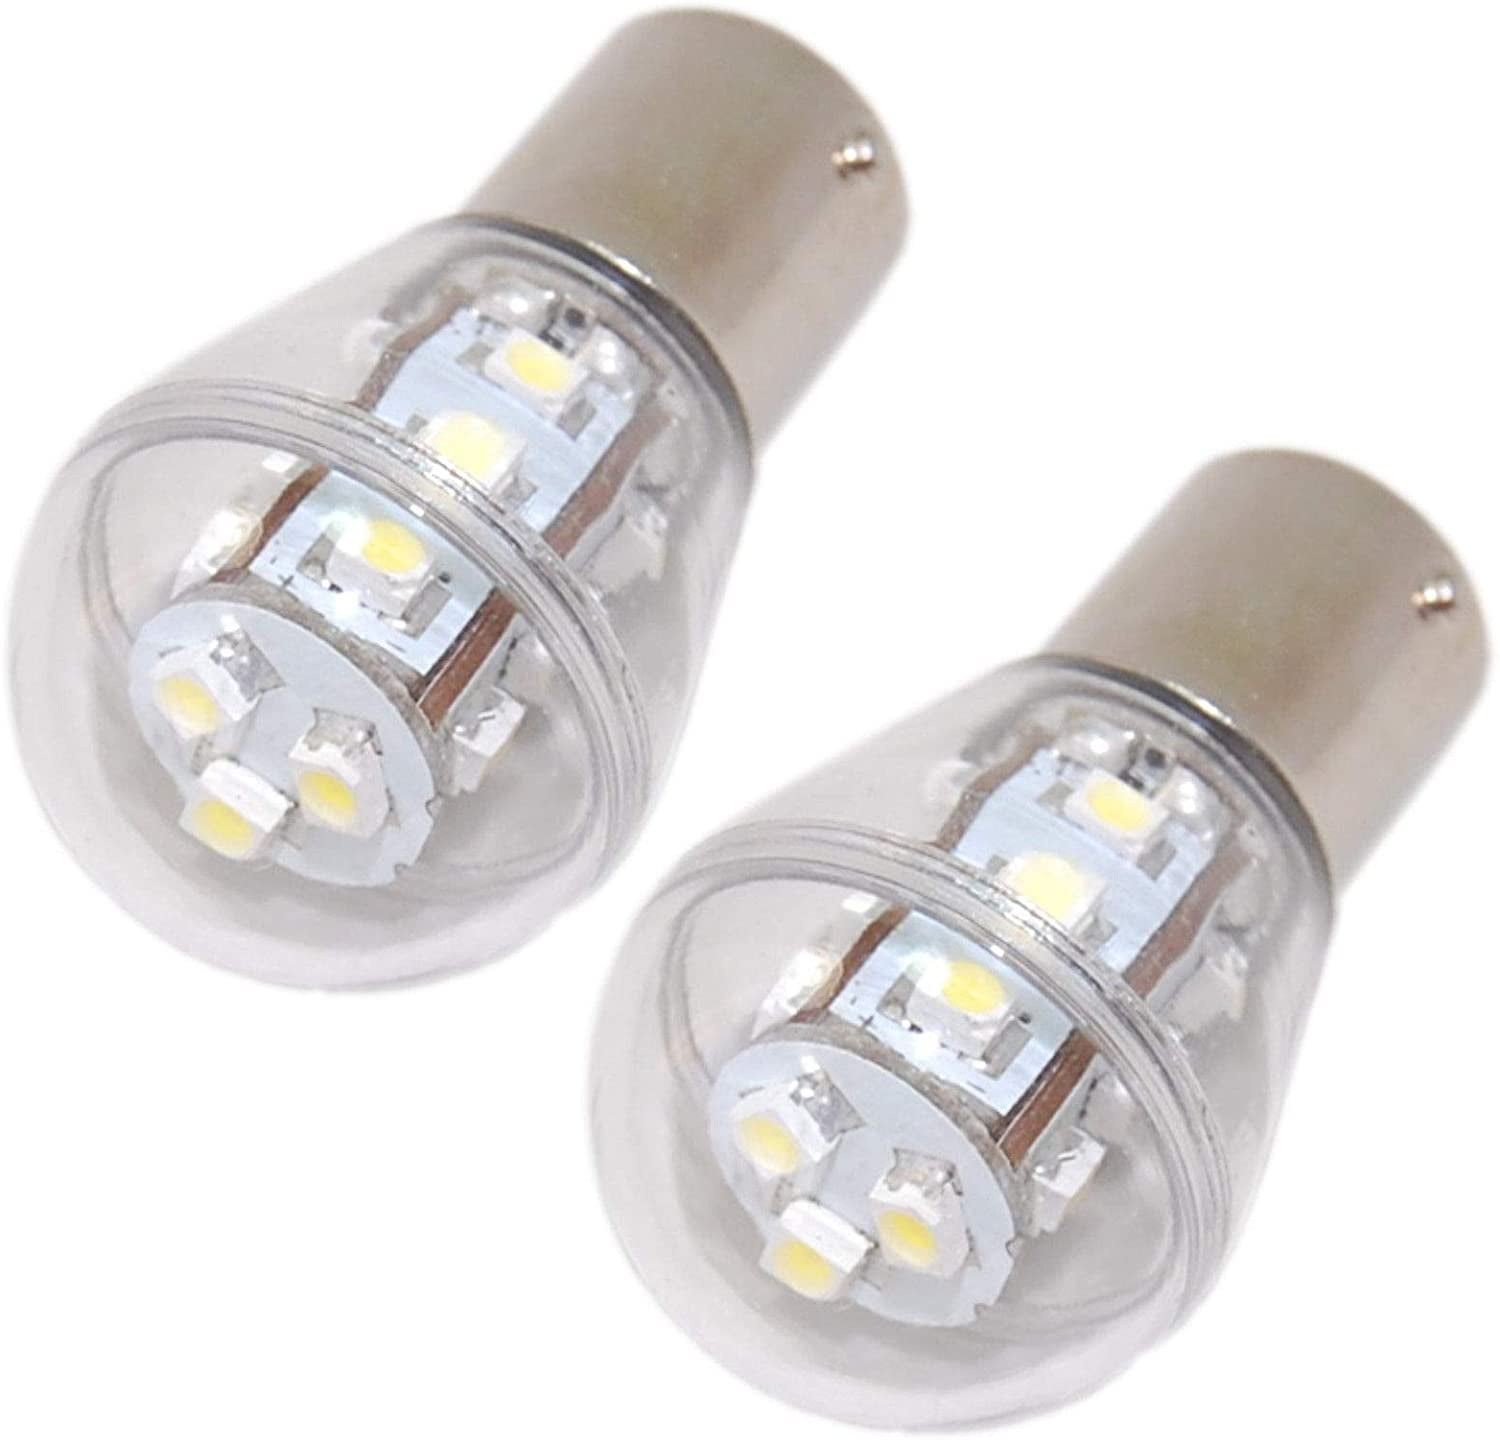 2-Pack Headlight LED Bulb for John Deere D100 D110 D120 D125 D130 D140 D150-D170 